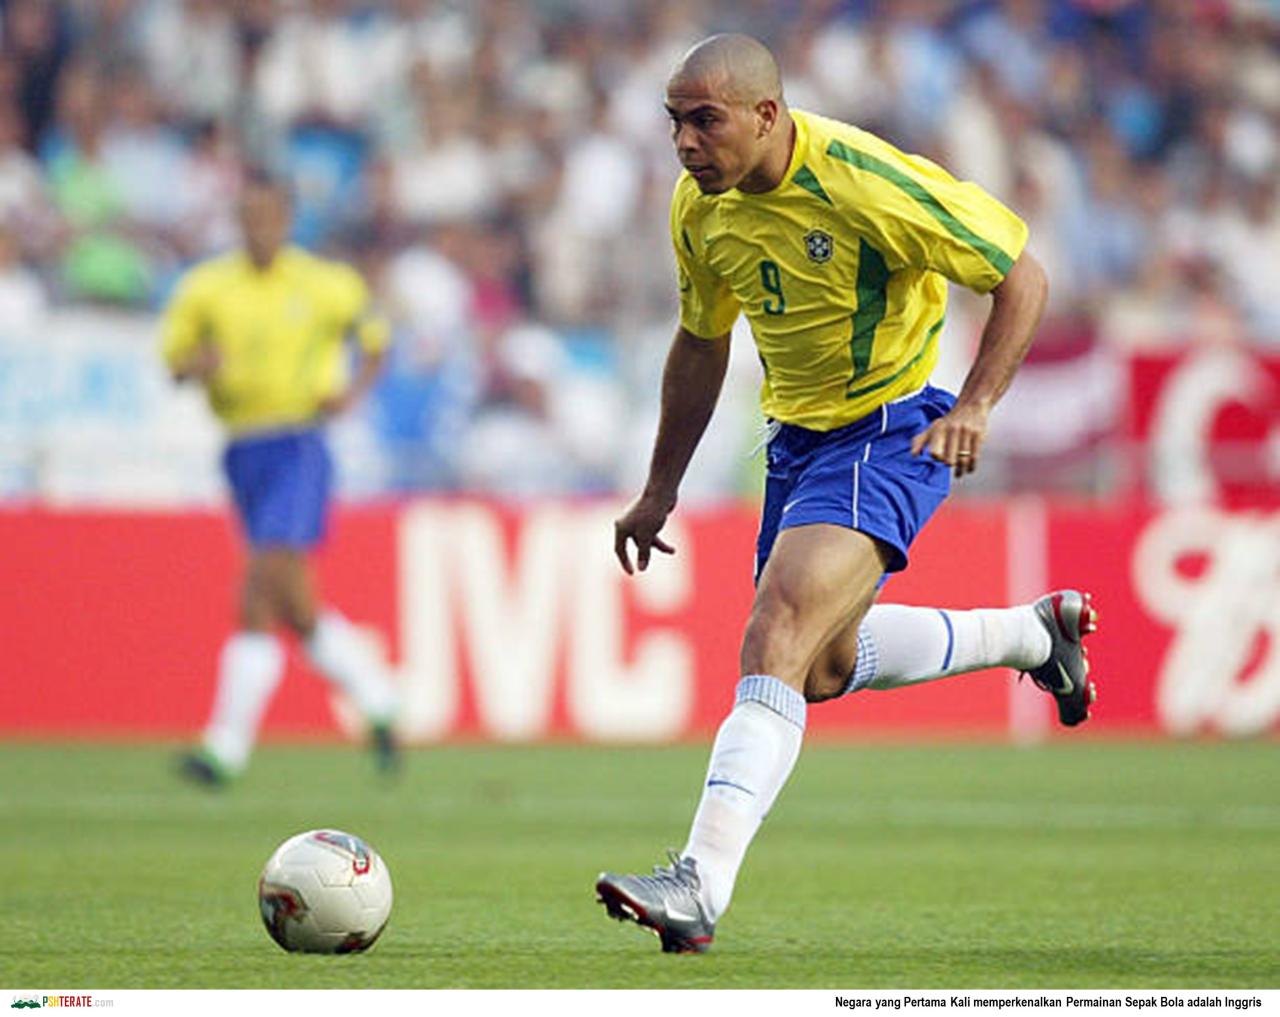 <a href="https://www.pshterate.com/"><img src="Ronaldo Luís Nazário de Lima.jpg" alt="Negara yang Pertama Kali memperkenalkan Permainan Sepak Bola adalah Inggris"></a>